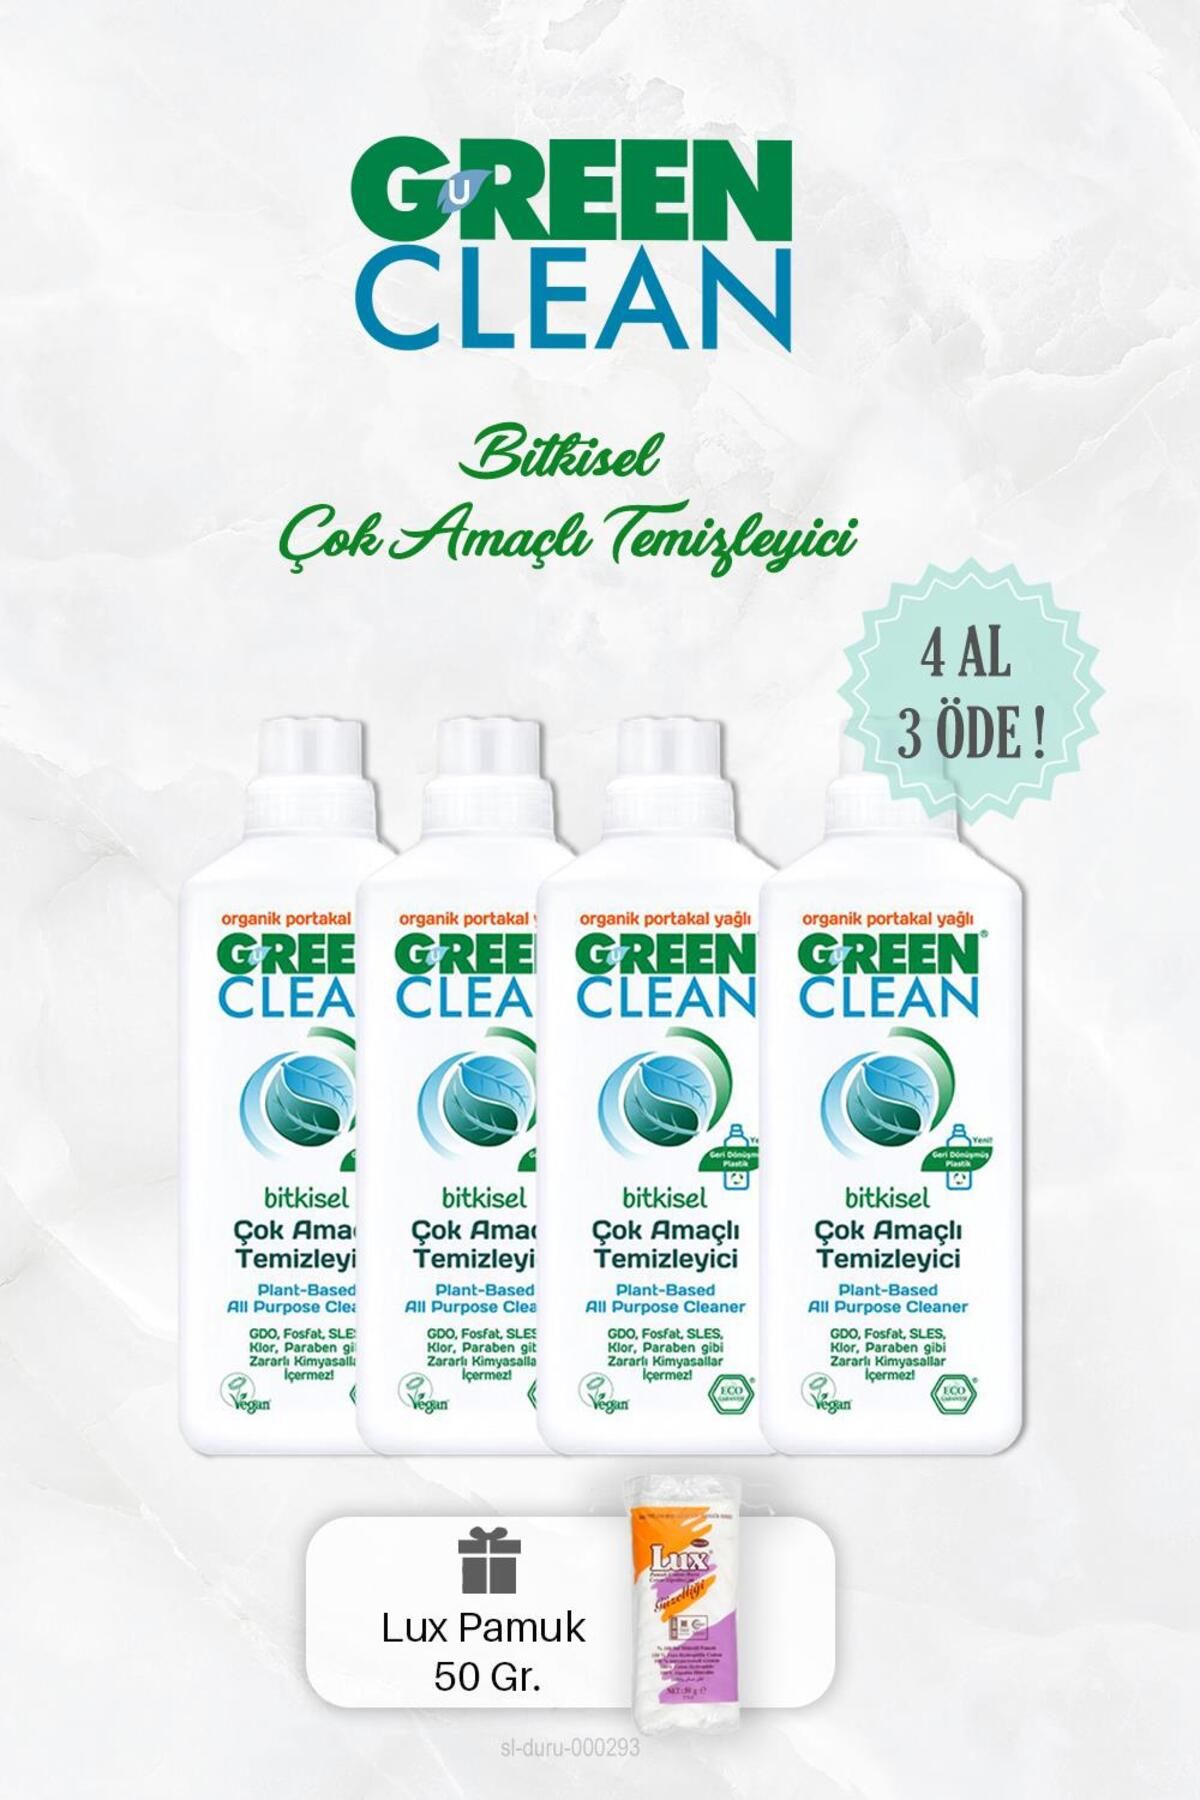 Green Clean Bitkisel Çok Amaçlı Temizleyici 1000 ml 4 Al 3 Öde Ve Pamuk